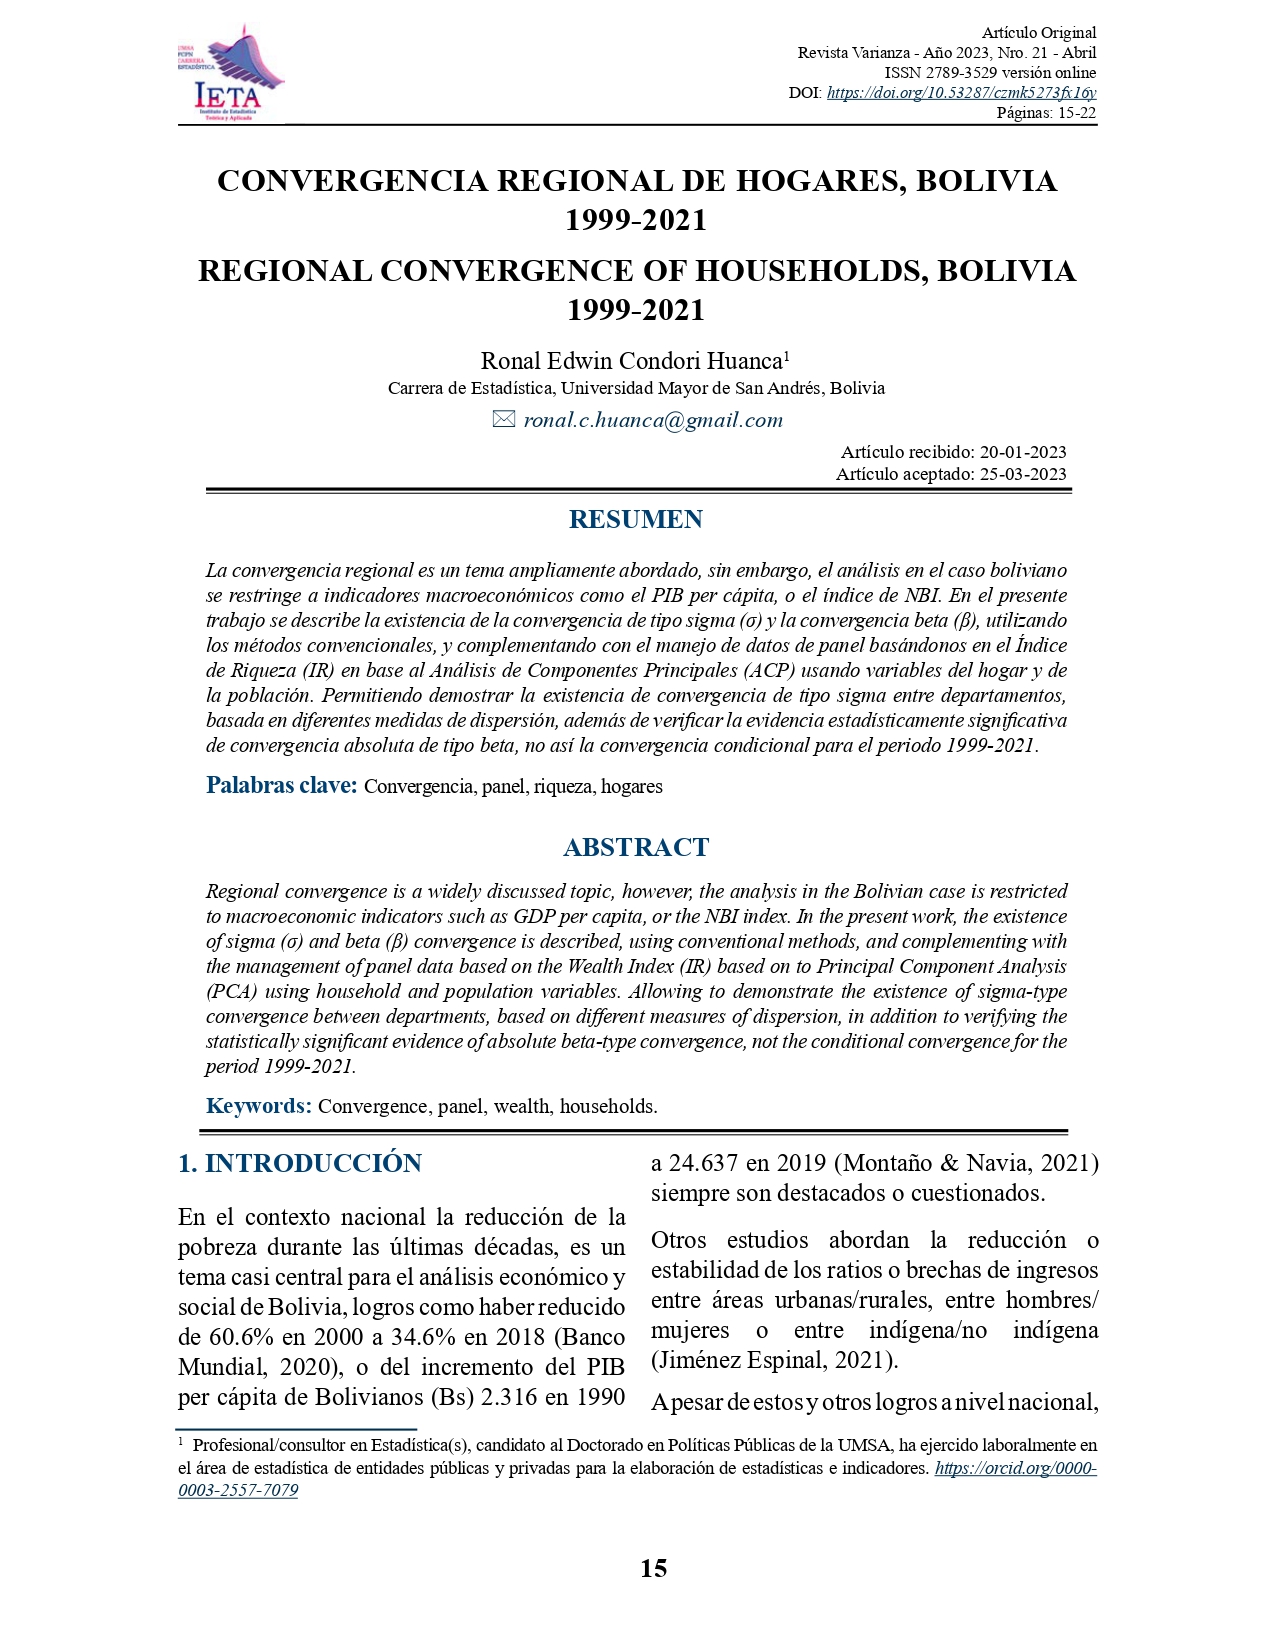 Convergencia regional de hogares, Bolivia 1999 - 2021